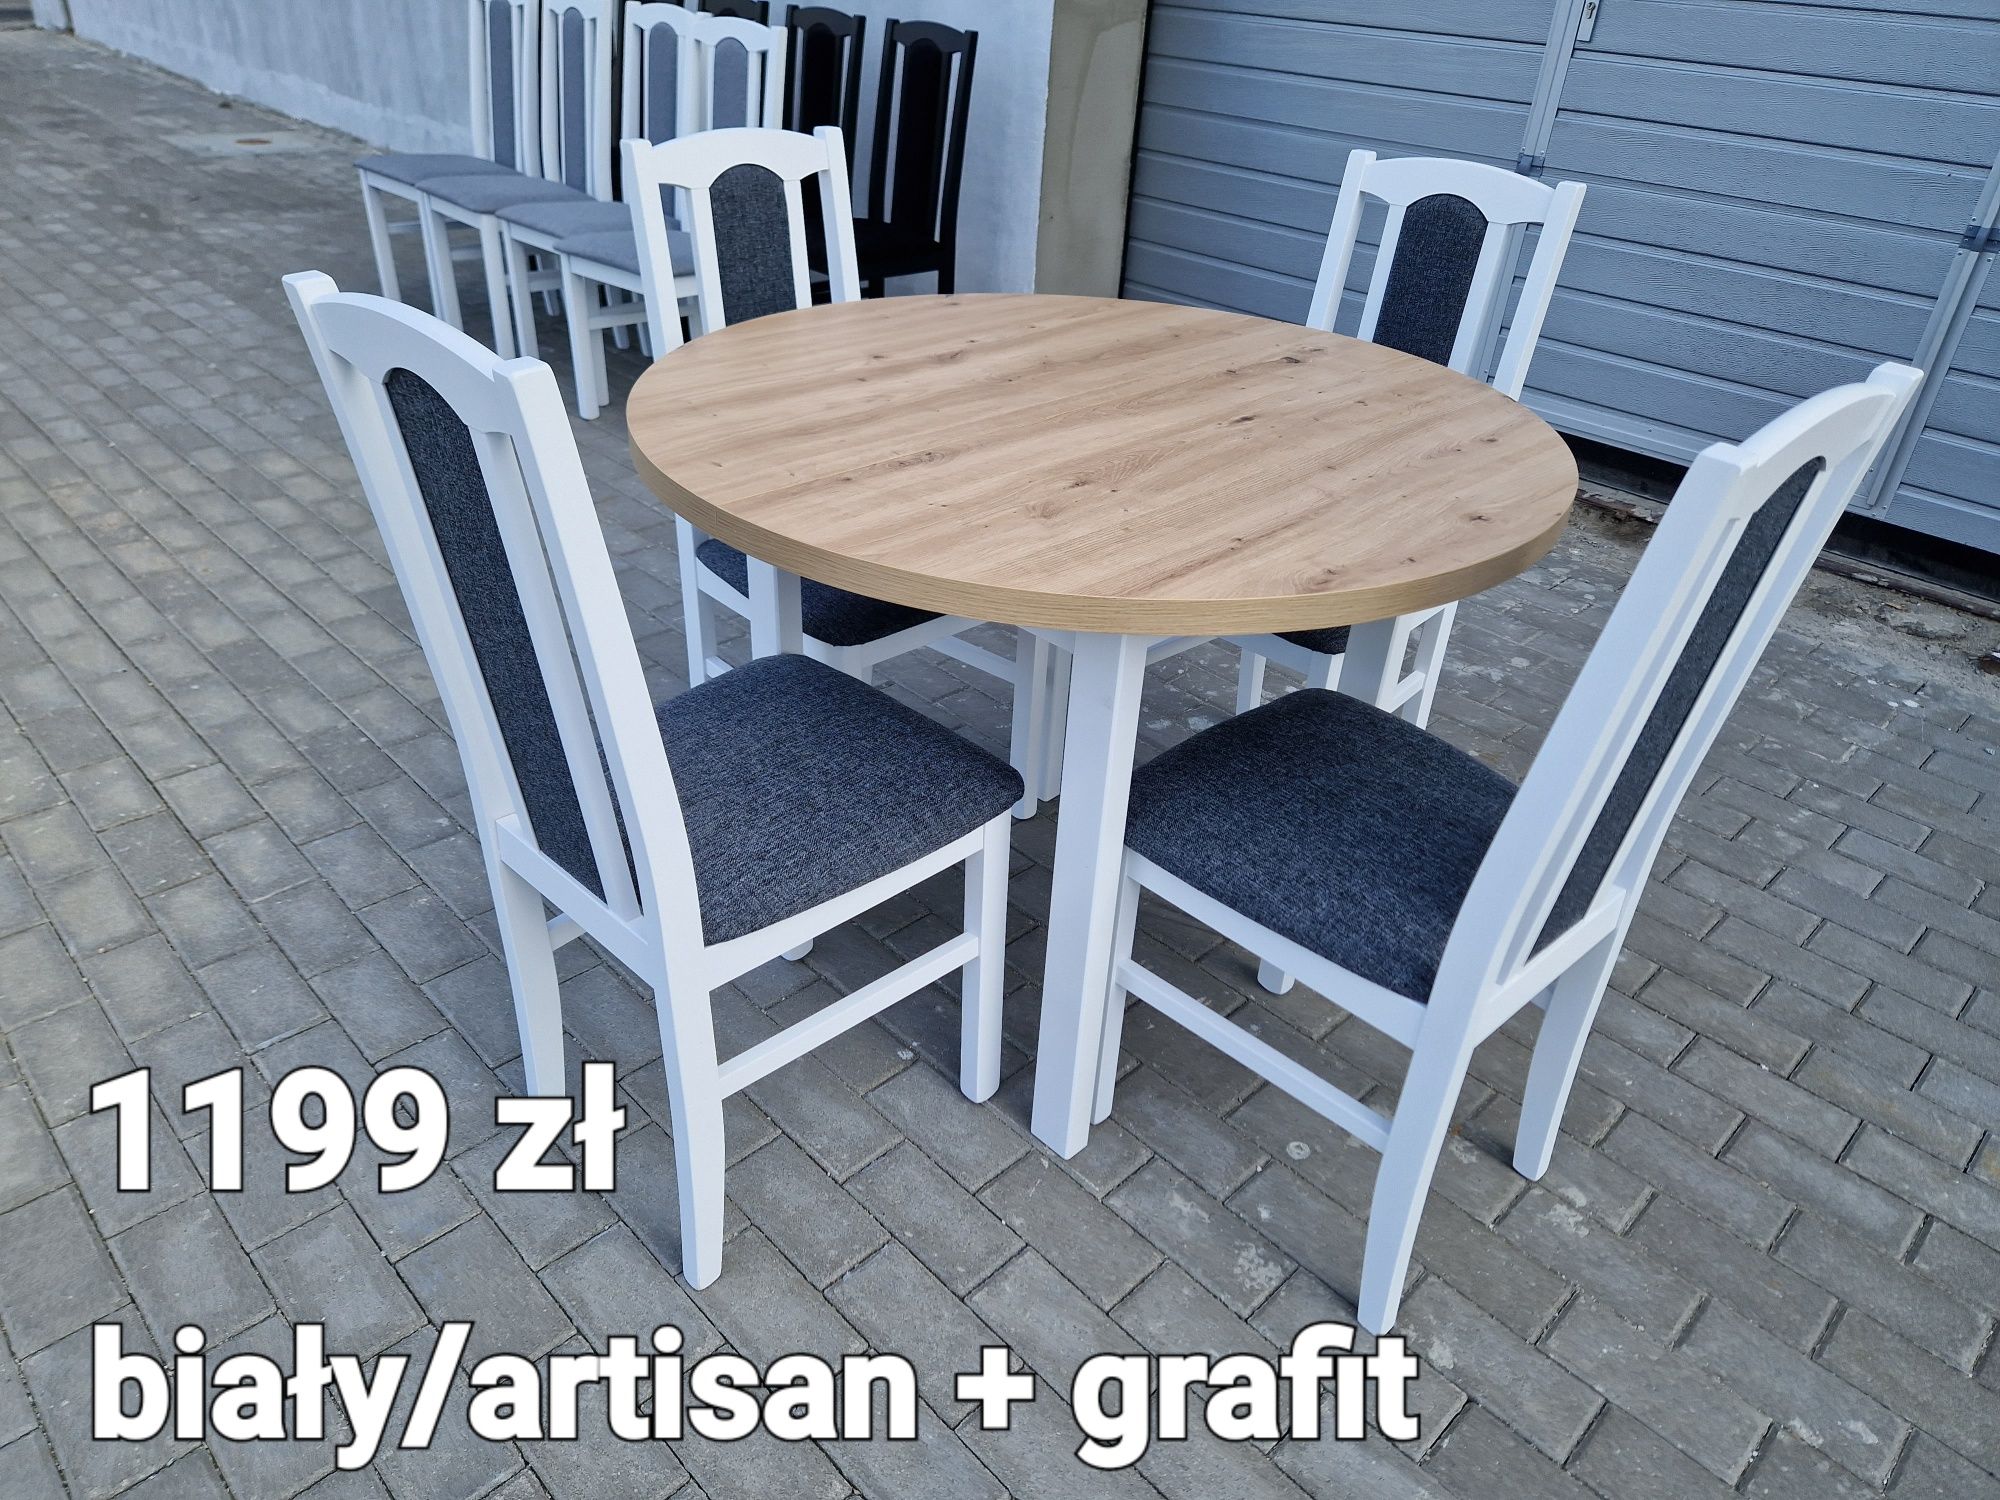 Nowe: Stół okrągły + 4 krzesła, biały/artisan + grafit, transport PL